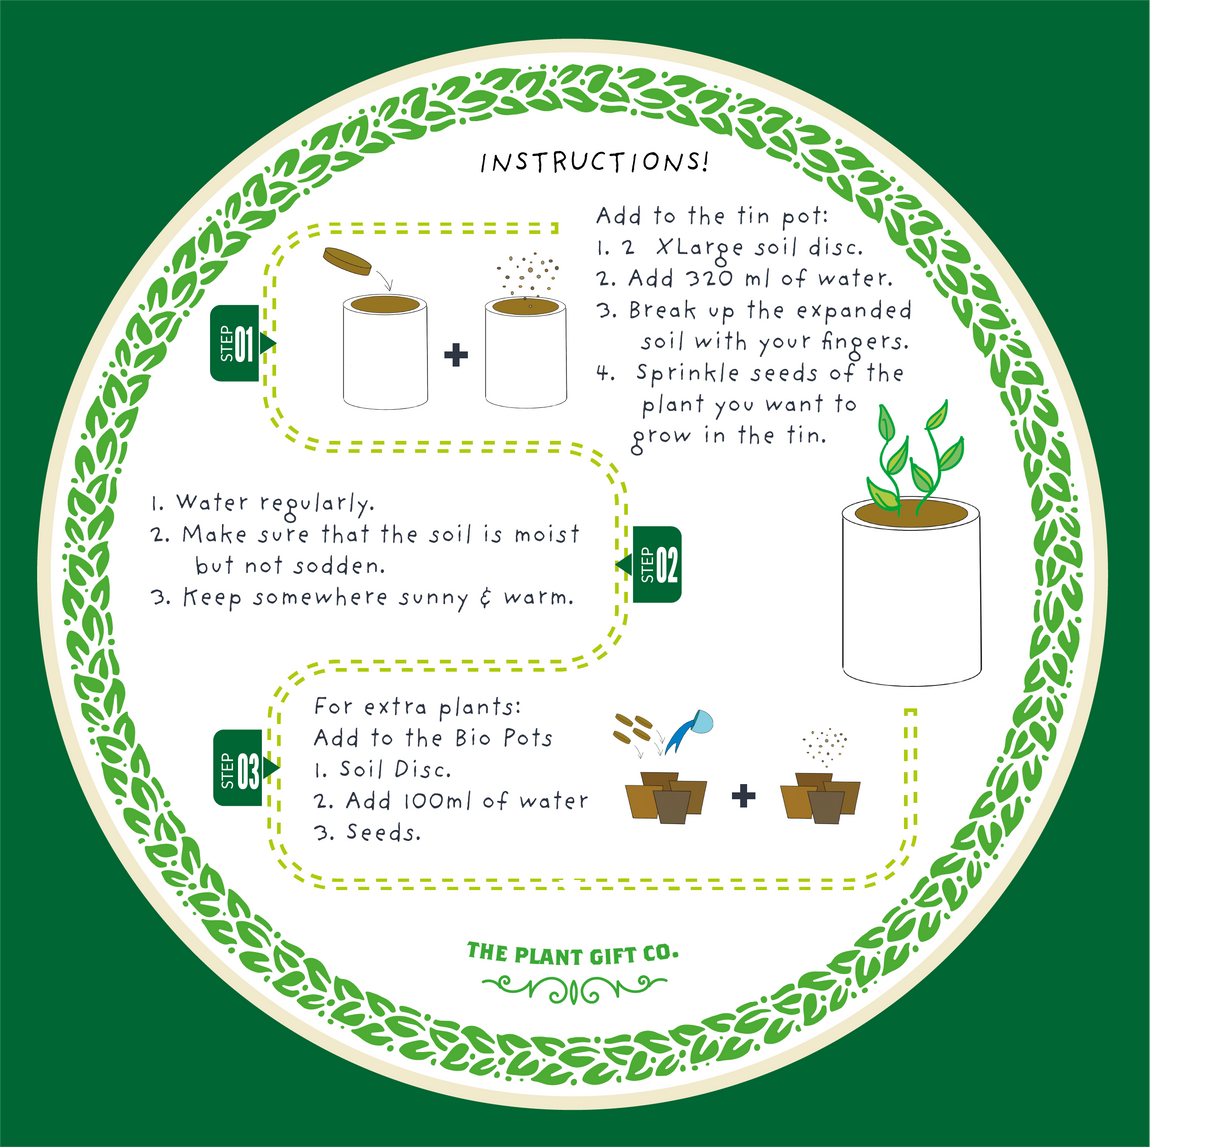 Big Bee Happiness Eco Plant Grow Kit, Gardening Gift